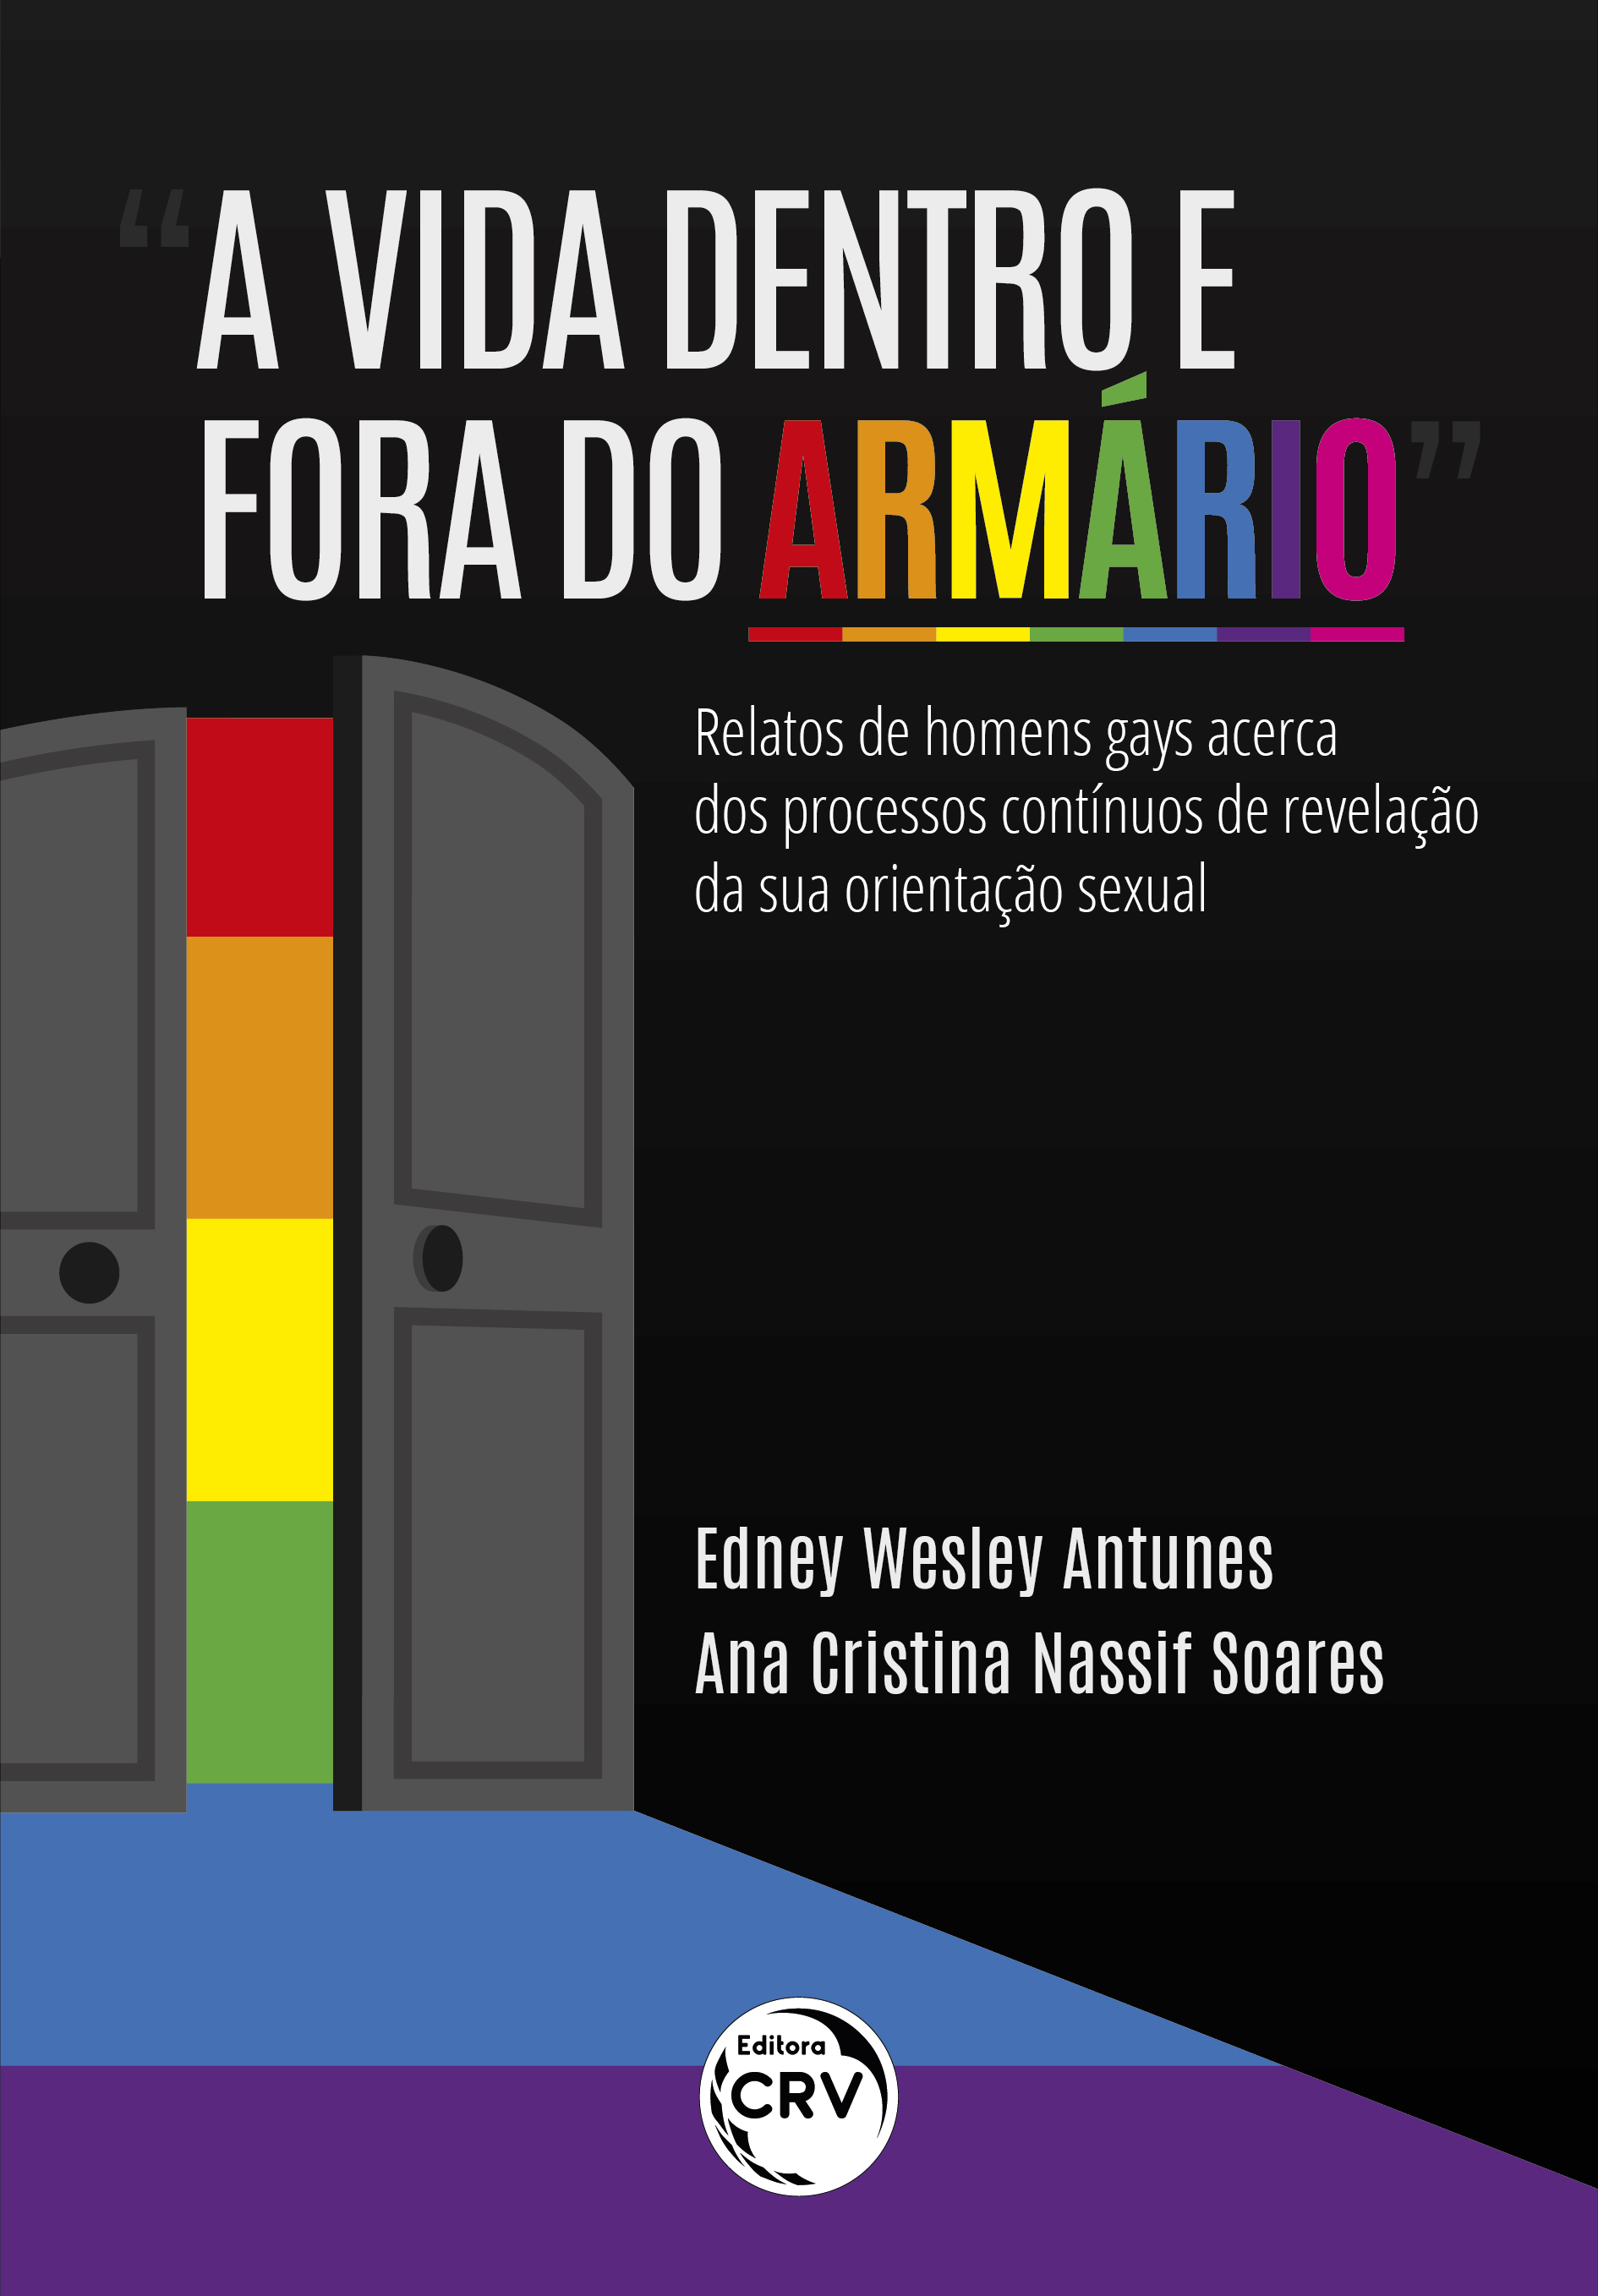 Capa do livro: “A VIDA DENTRO E FORA DO ARMÁRIO”<br> relatos de homens gays acerca dos processos contínuos de revelação da sua orientação sexual